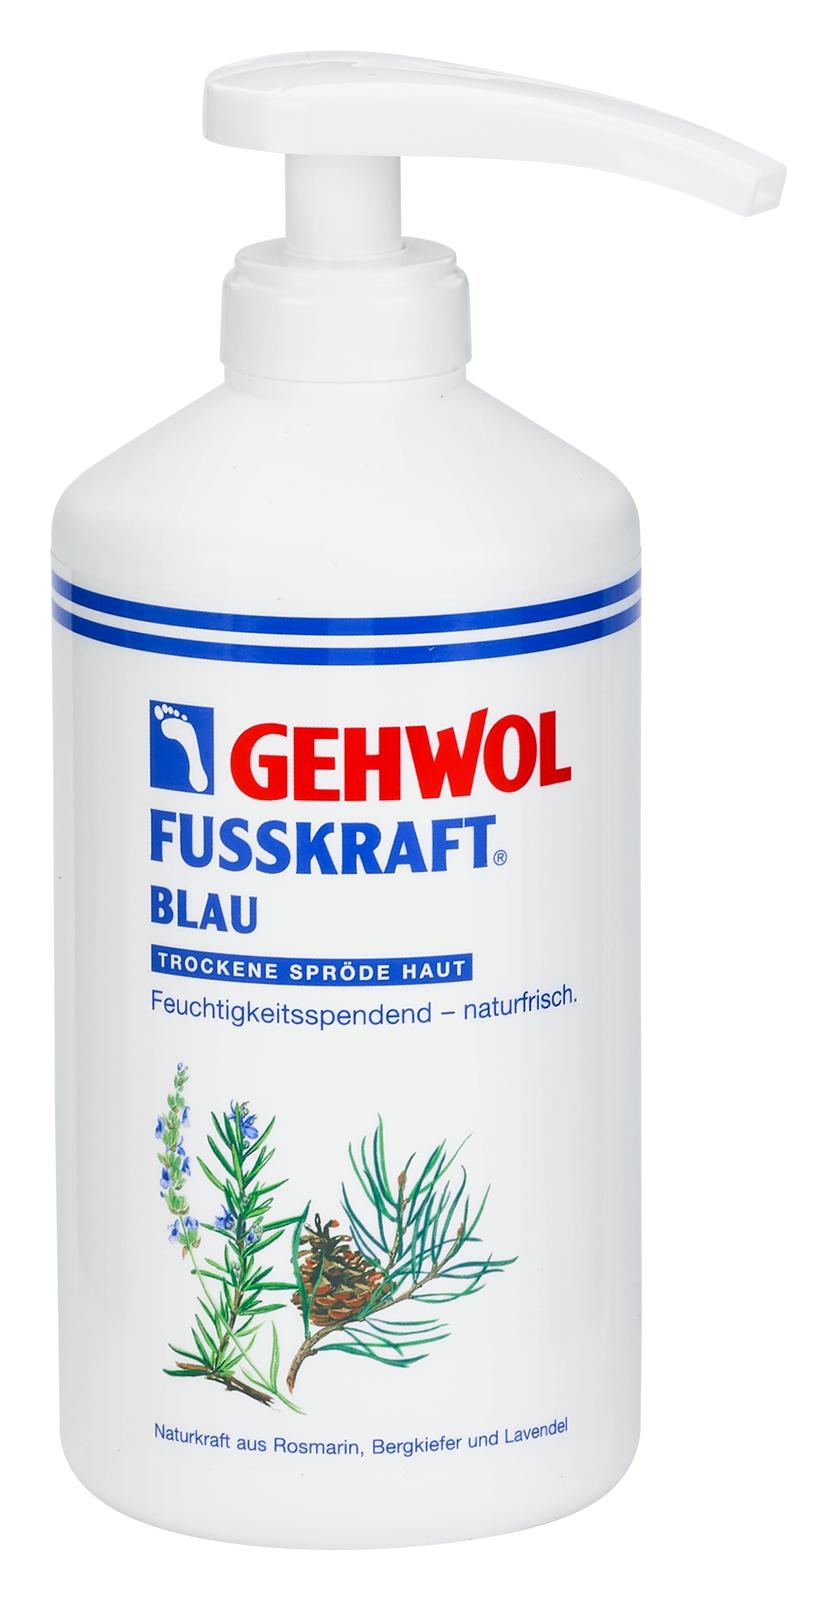 🔷 GEHWOL FUSSKRAFT BLAU 500 ml Dose mit Spender